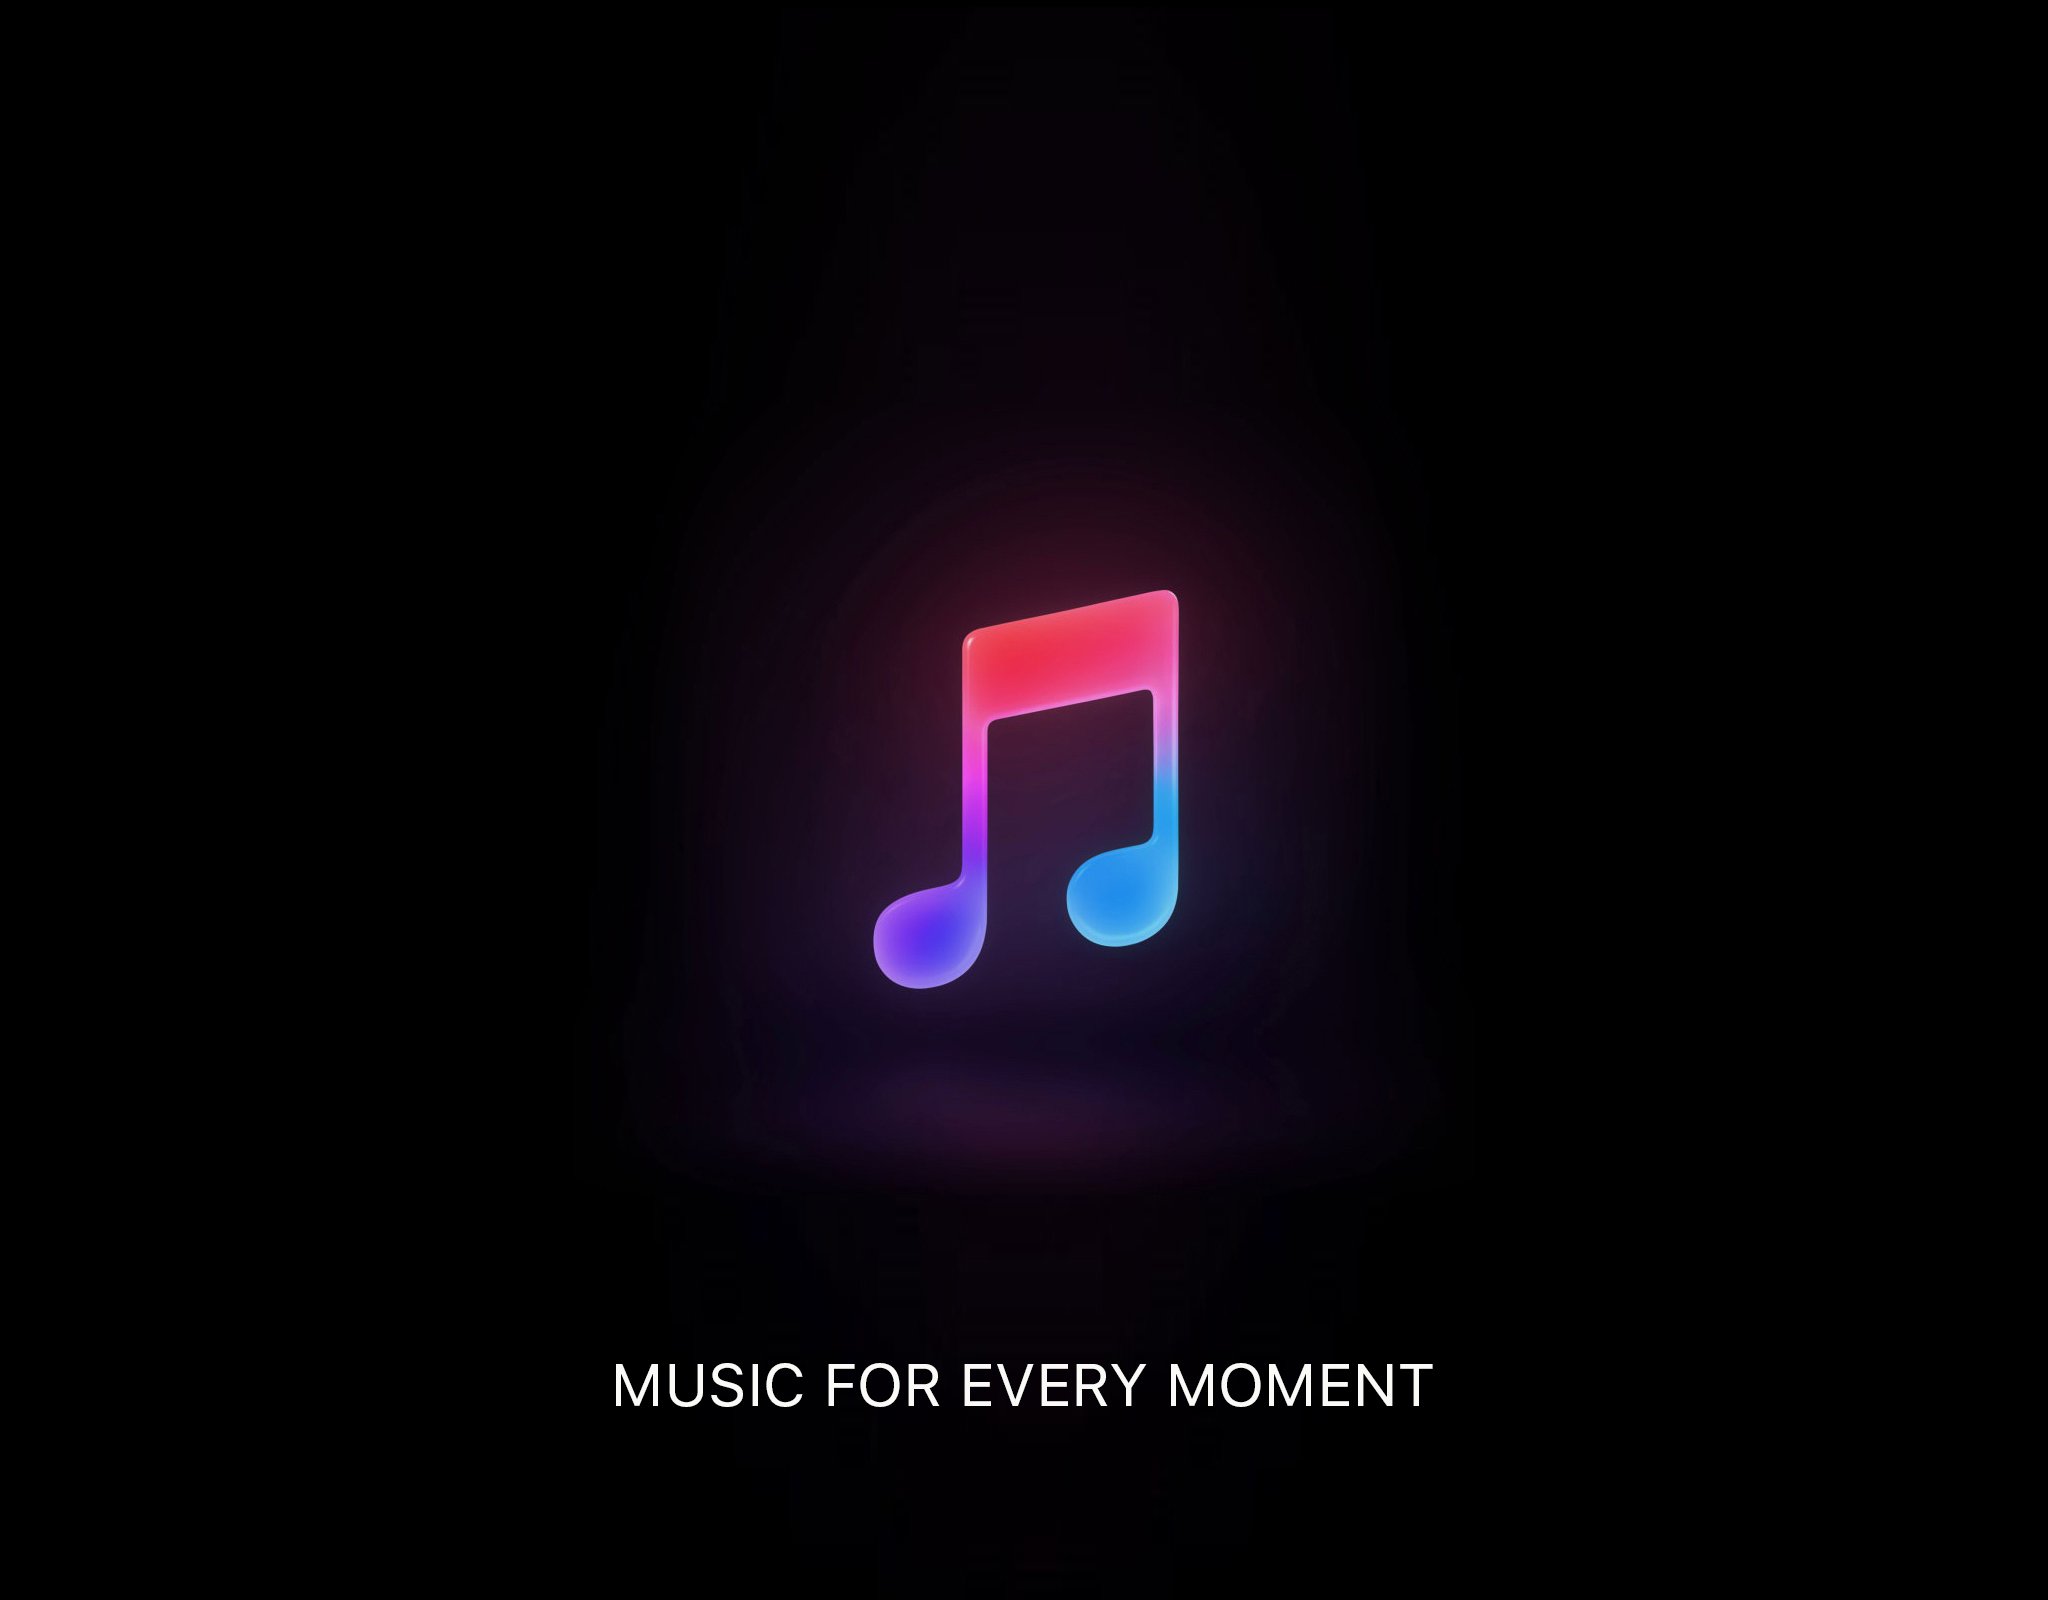 Музыка для соунпад. Значок музыки. Apple Music. Apple Music фон. Картинка Apple Music.